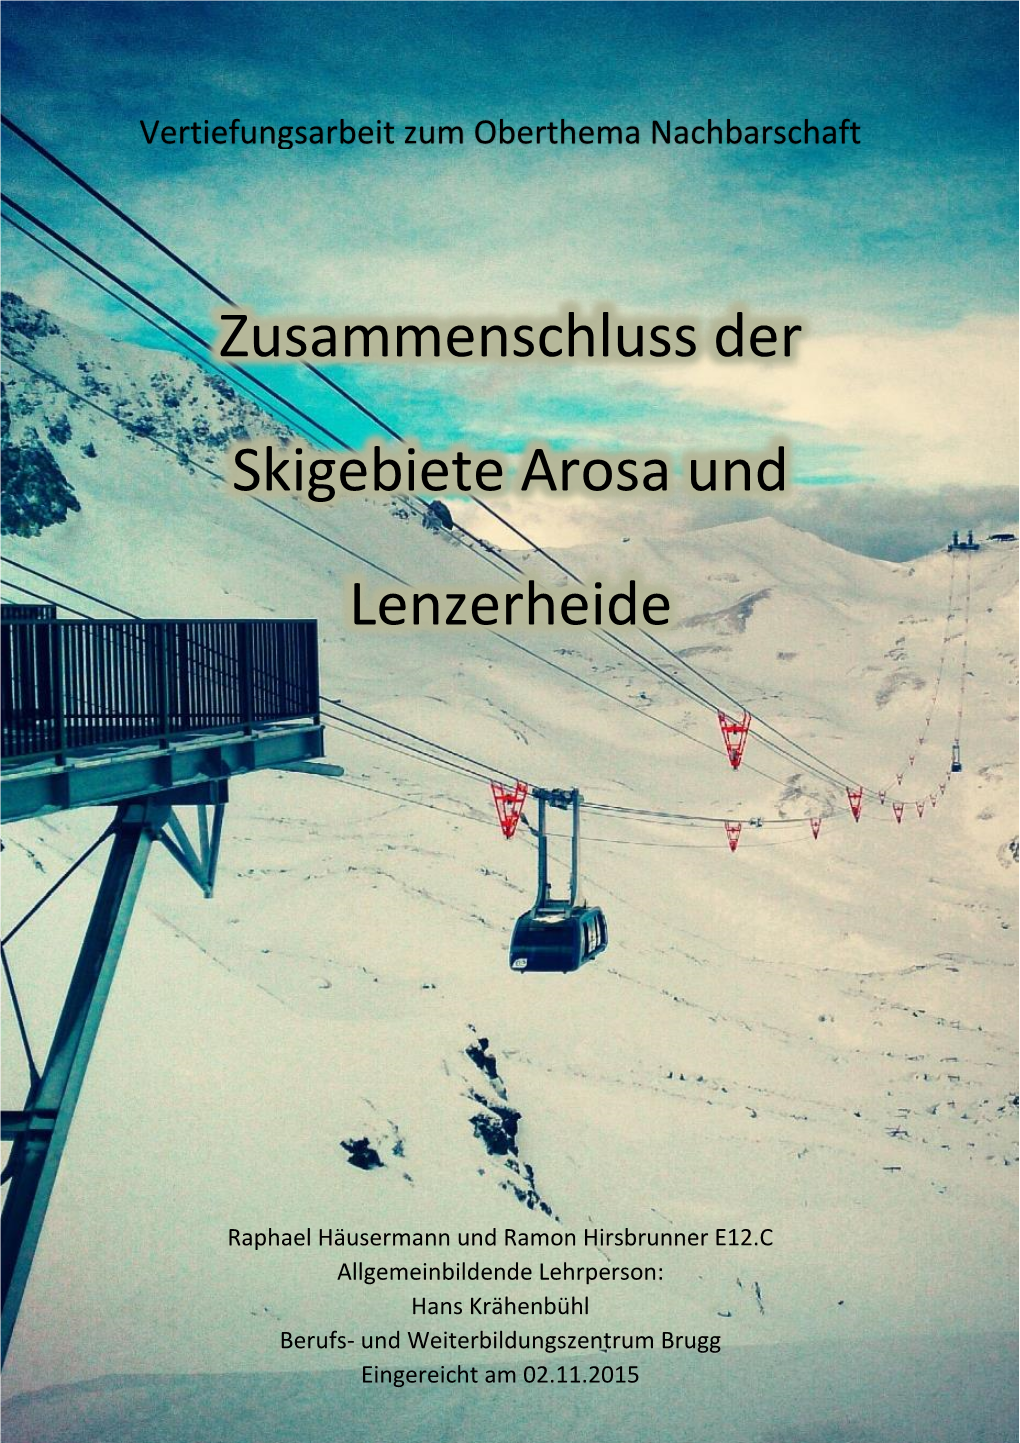 Zusammenschluss Der Skigebiete Arosa Und Lenzerheide B) Was Möchten Sie Mit Diesem Teilziel Genauer in Erfahrung Bringen?